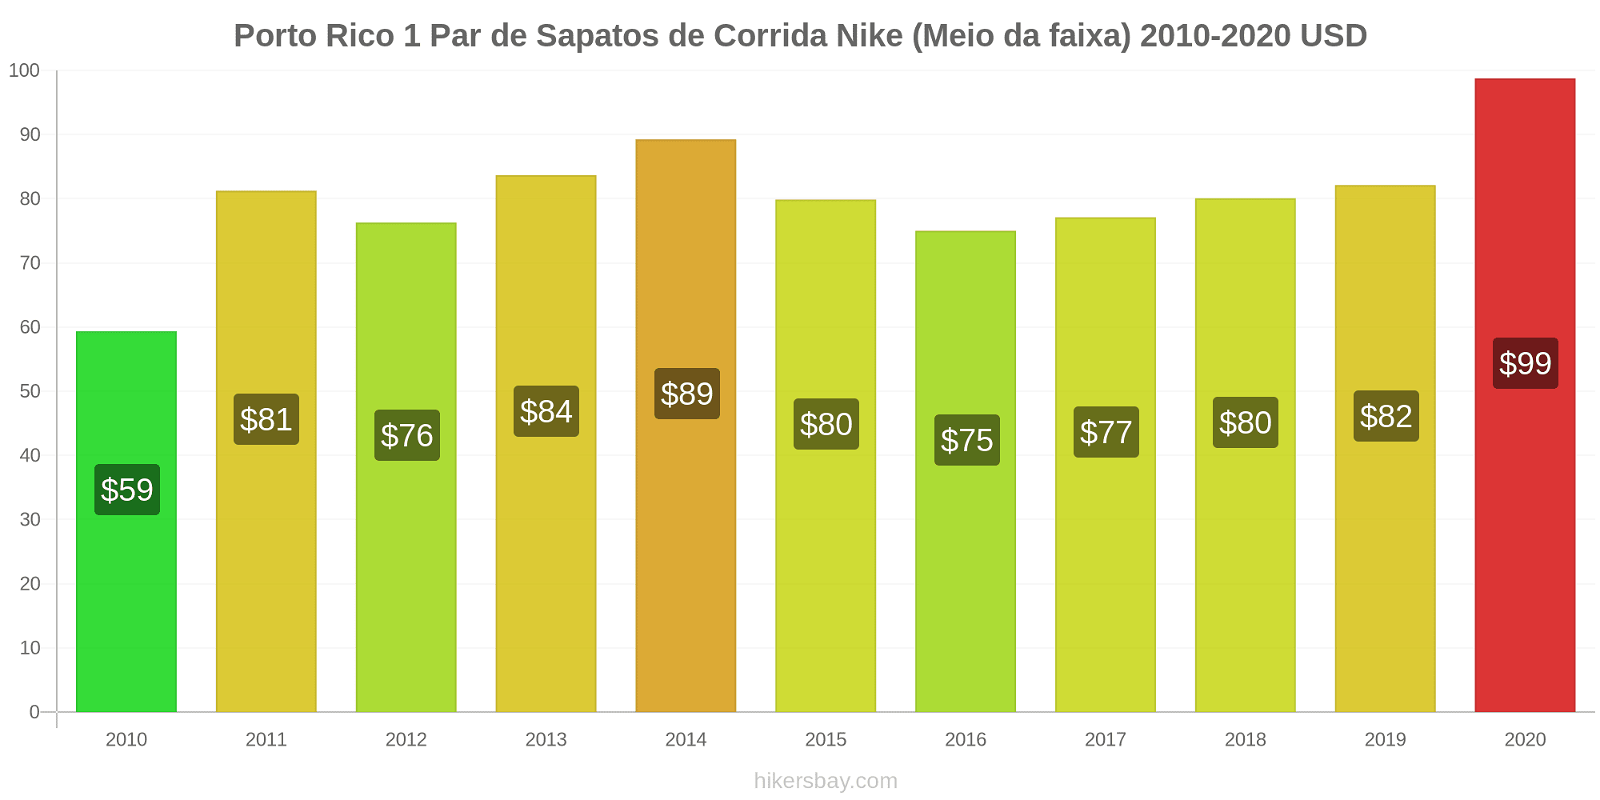 Porto Rico variação de preço 1 par de tênis Nike (mid-range) hikersbay.com